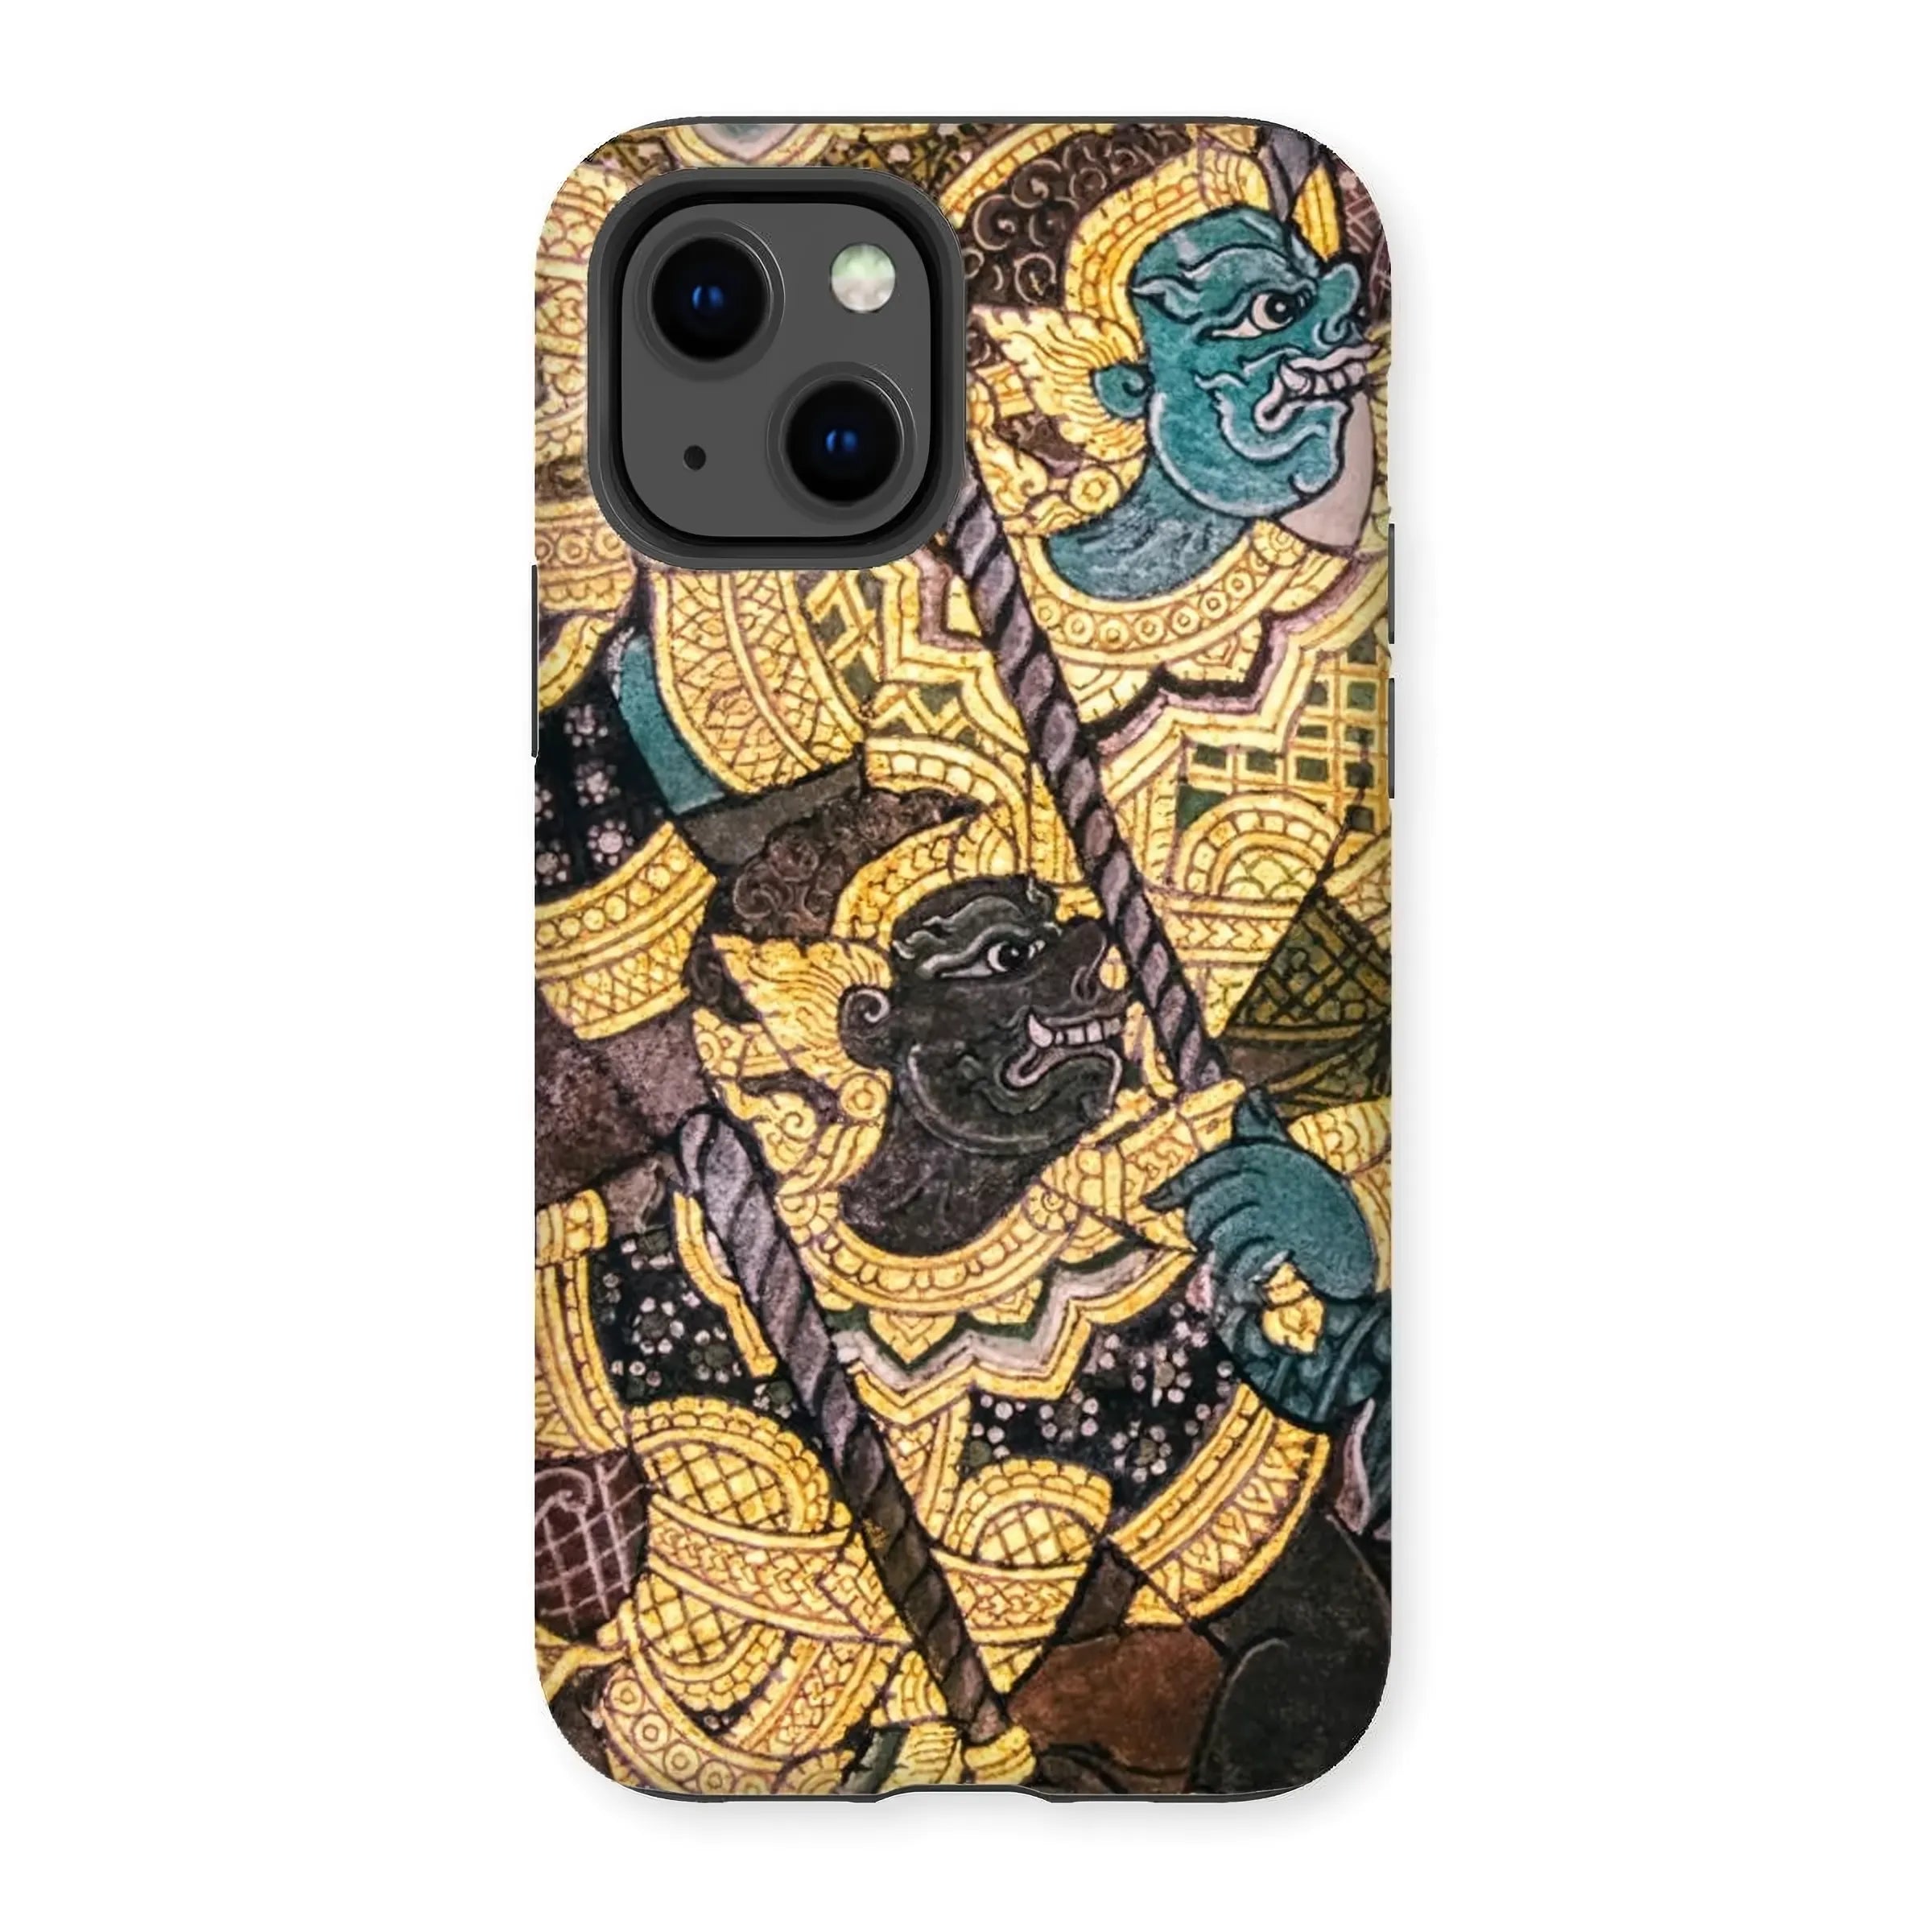 Action Men - Ancient Thai Temple Art Phone Case - Mobile Phone Cases - Aesthetic Art